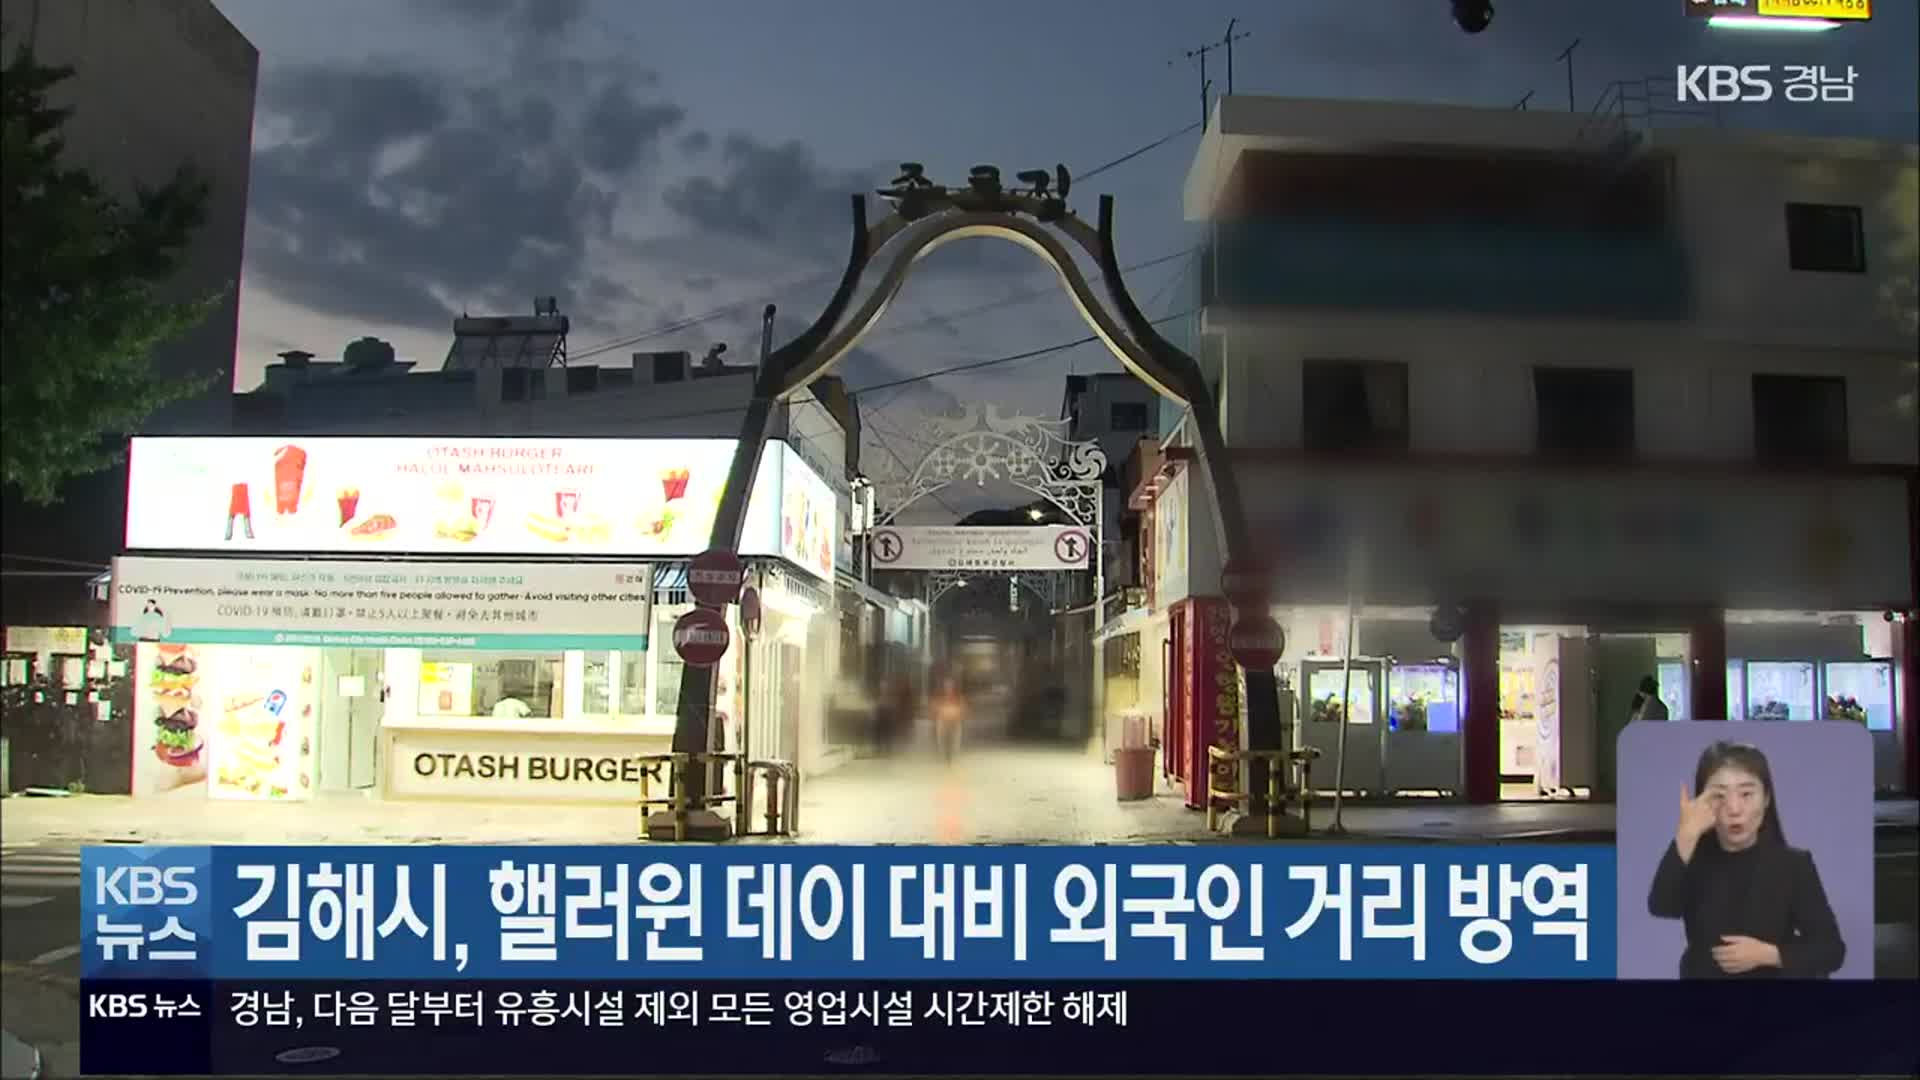 김해시, 핼러윈 데이 대비 외국인 거리 방역